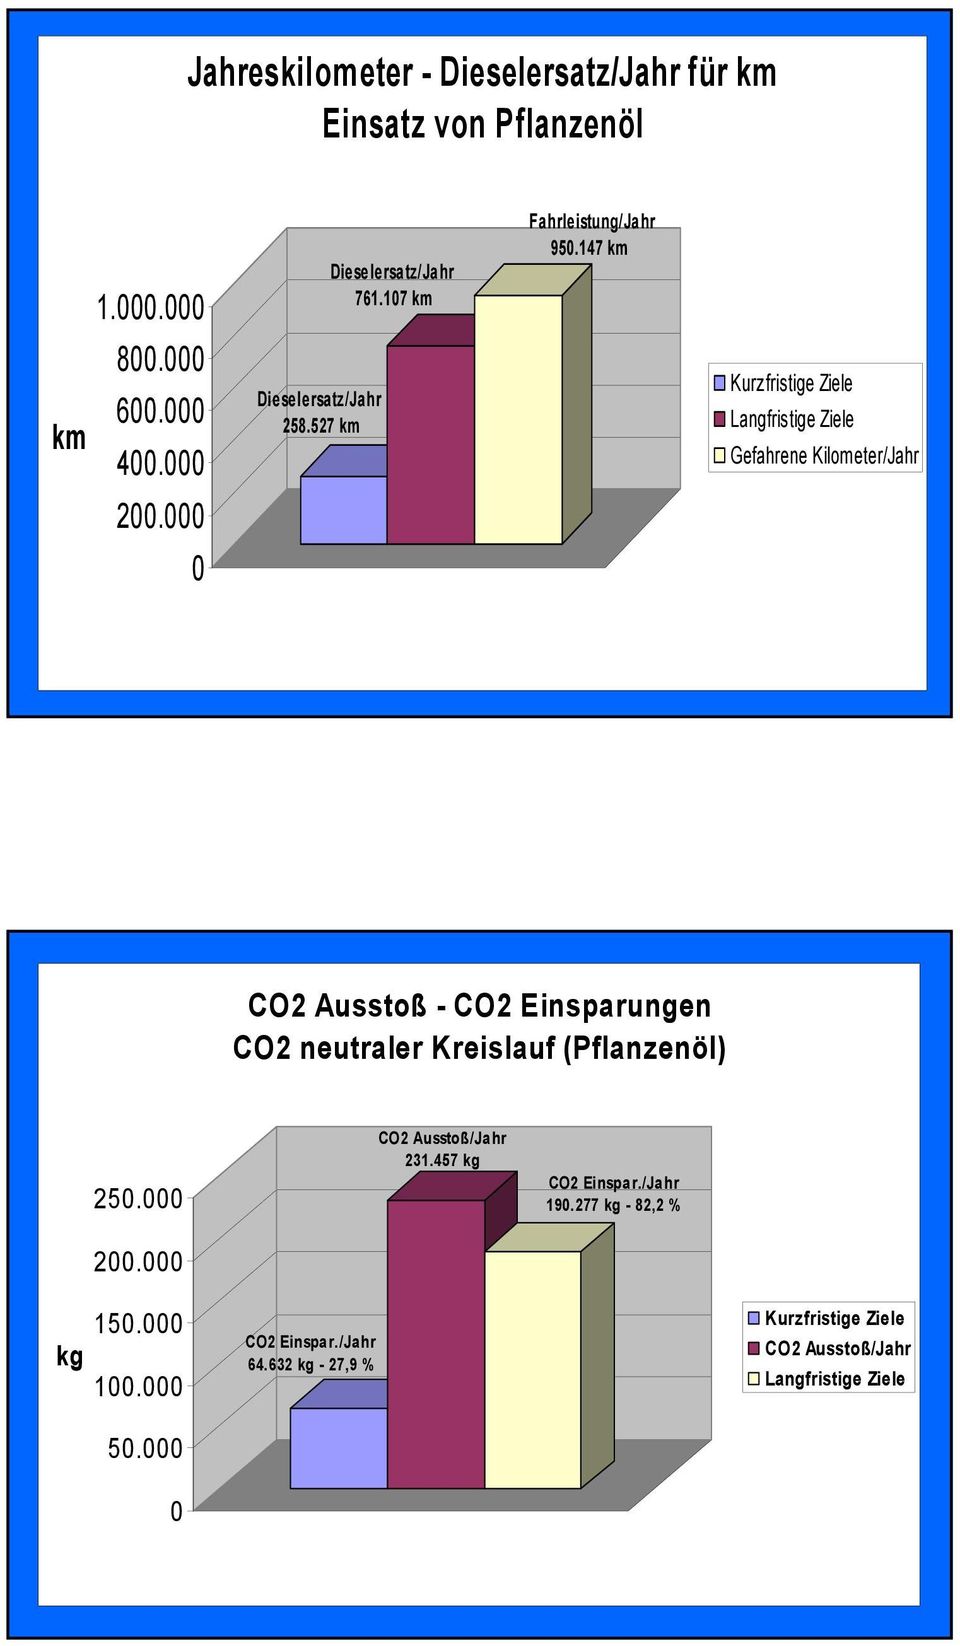 000 0 CO2 Ausstoß - CO2 Einsparungen CO2 neutraler Kreislauf (Pflanzenöl) 250.000 CO2 Ausstoß/Jahr 231.457 kg CO2 Einspar./Jahr 190.